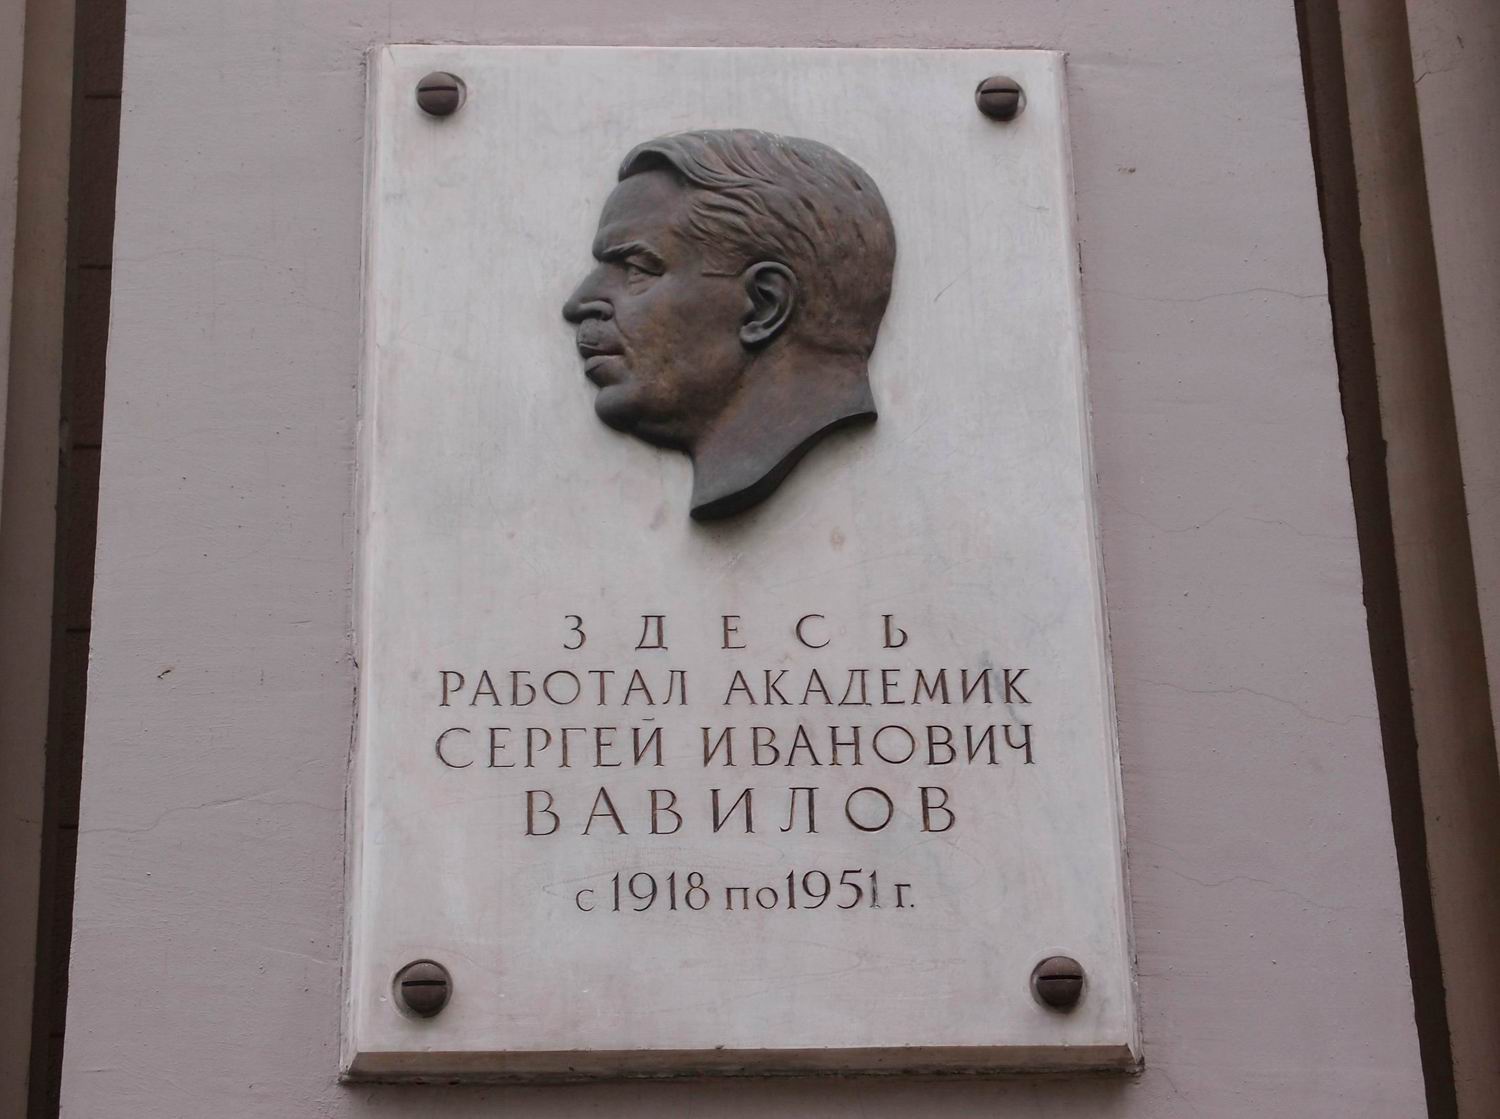 Мемориальная доска Вавилову С.И. (1891–1953), на Миусской площади, дом 4 (со стороны улицы Фадеева), на Институте прикладной математики им. М.В.Келдыша, открыта в 1955.